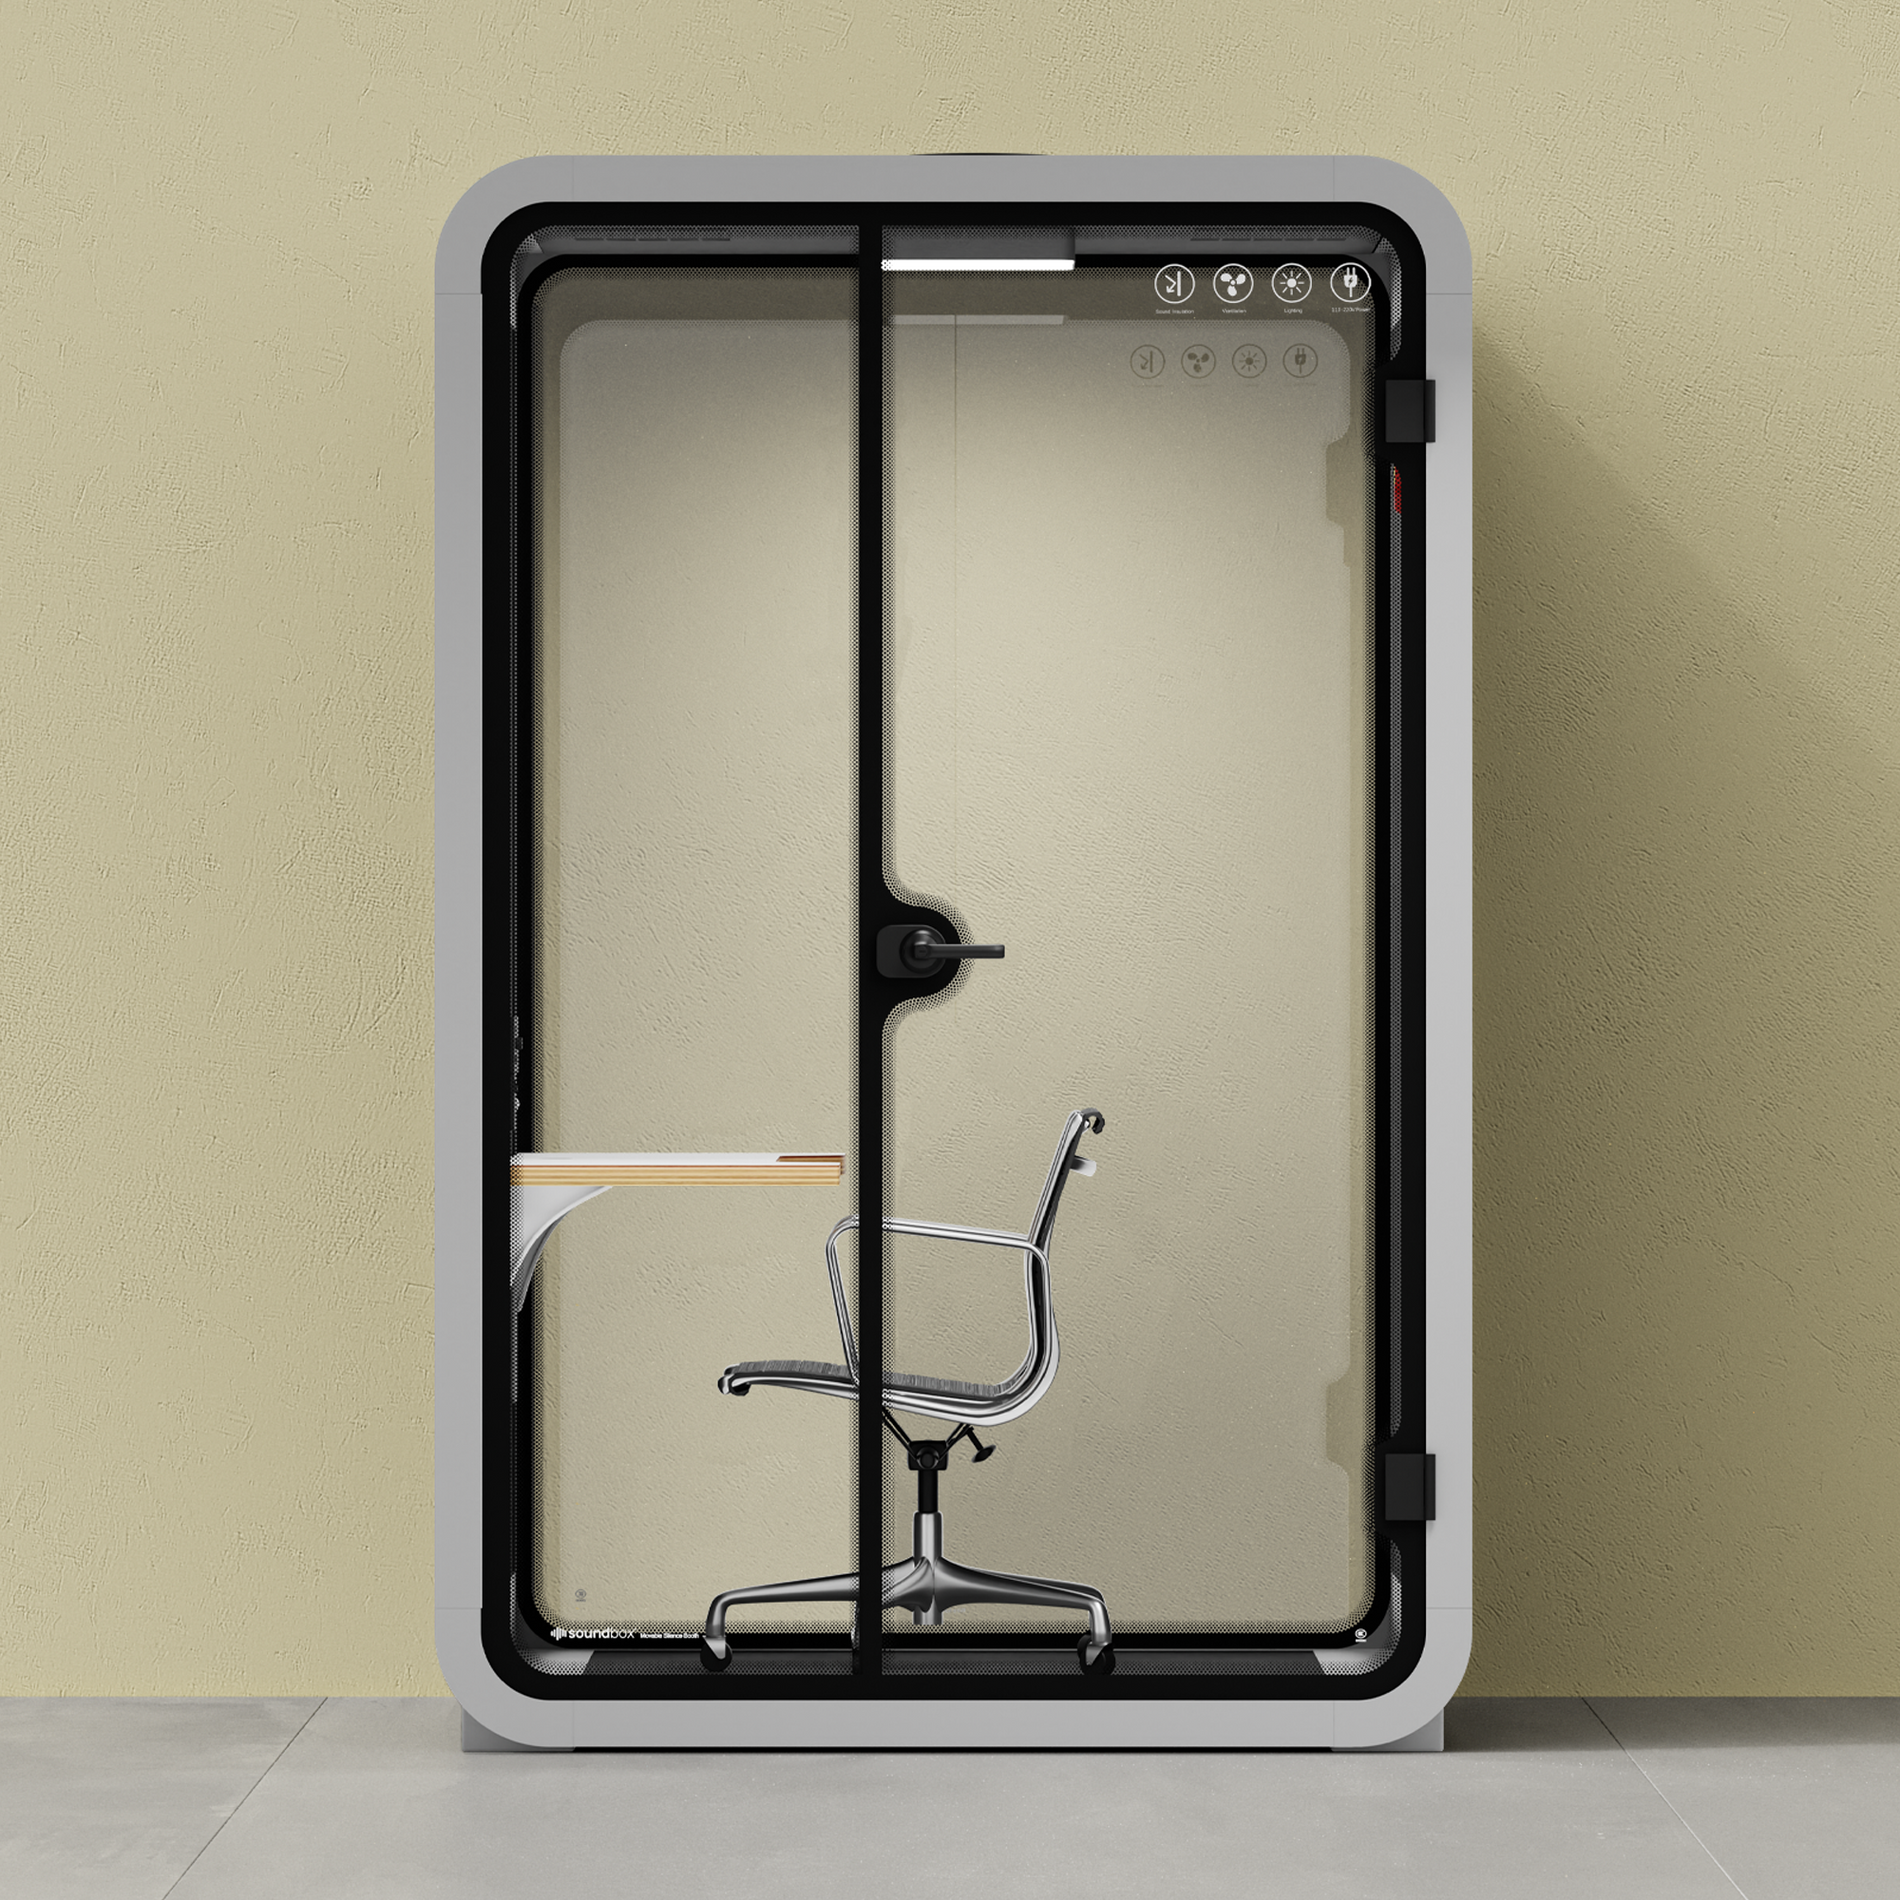 Kontortelefonboks Quell - 2 personerLight Grey / Dark Gray / Work Station + Designer Office Chair